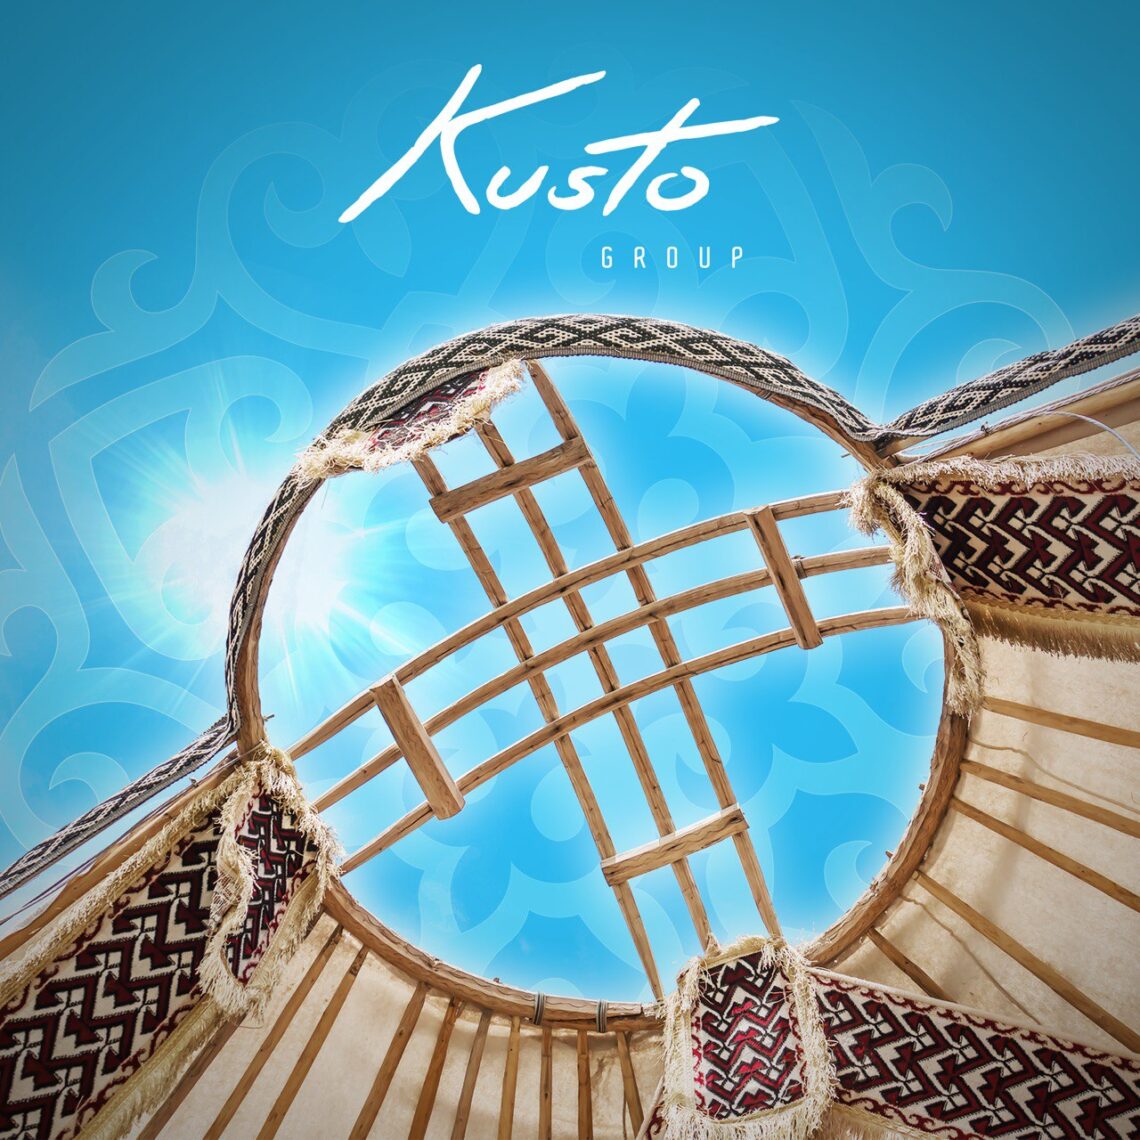 Kusto Group перечислит 100 миллионов тенге в фонд поддержки казахского языка